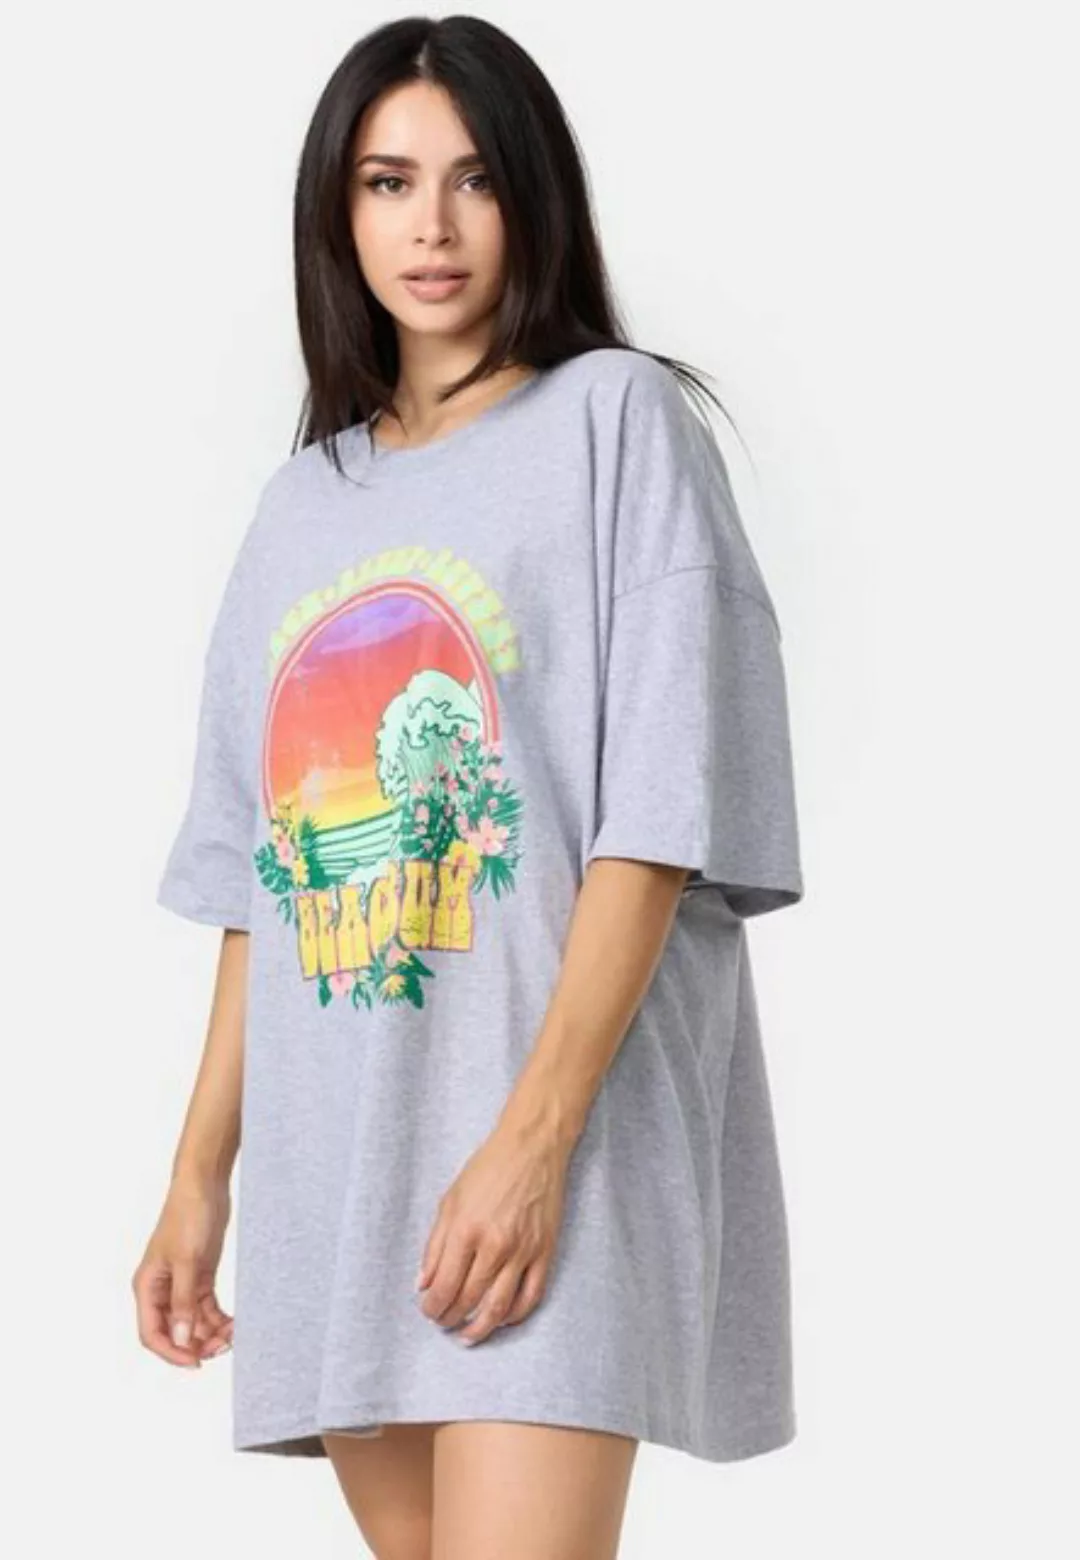 Worldclassca T-Shirt Worldclassca Oversized BEACH BUM Print T-Shirt lang So günstig online kaufen